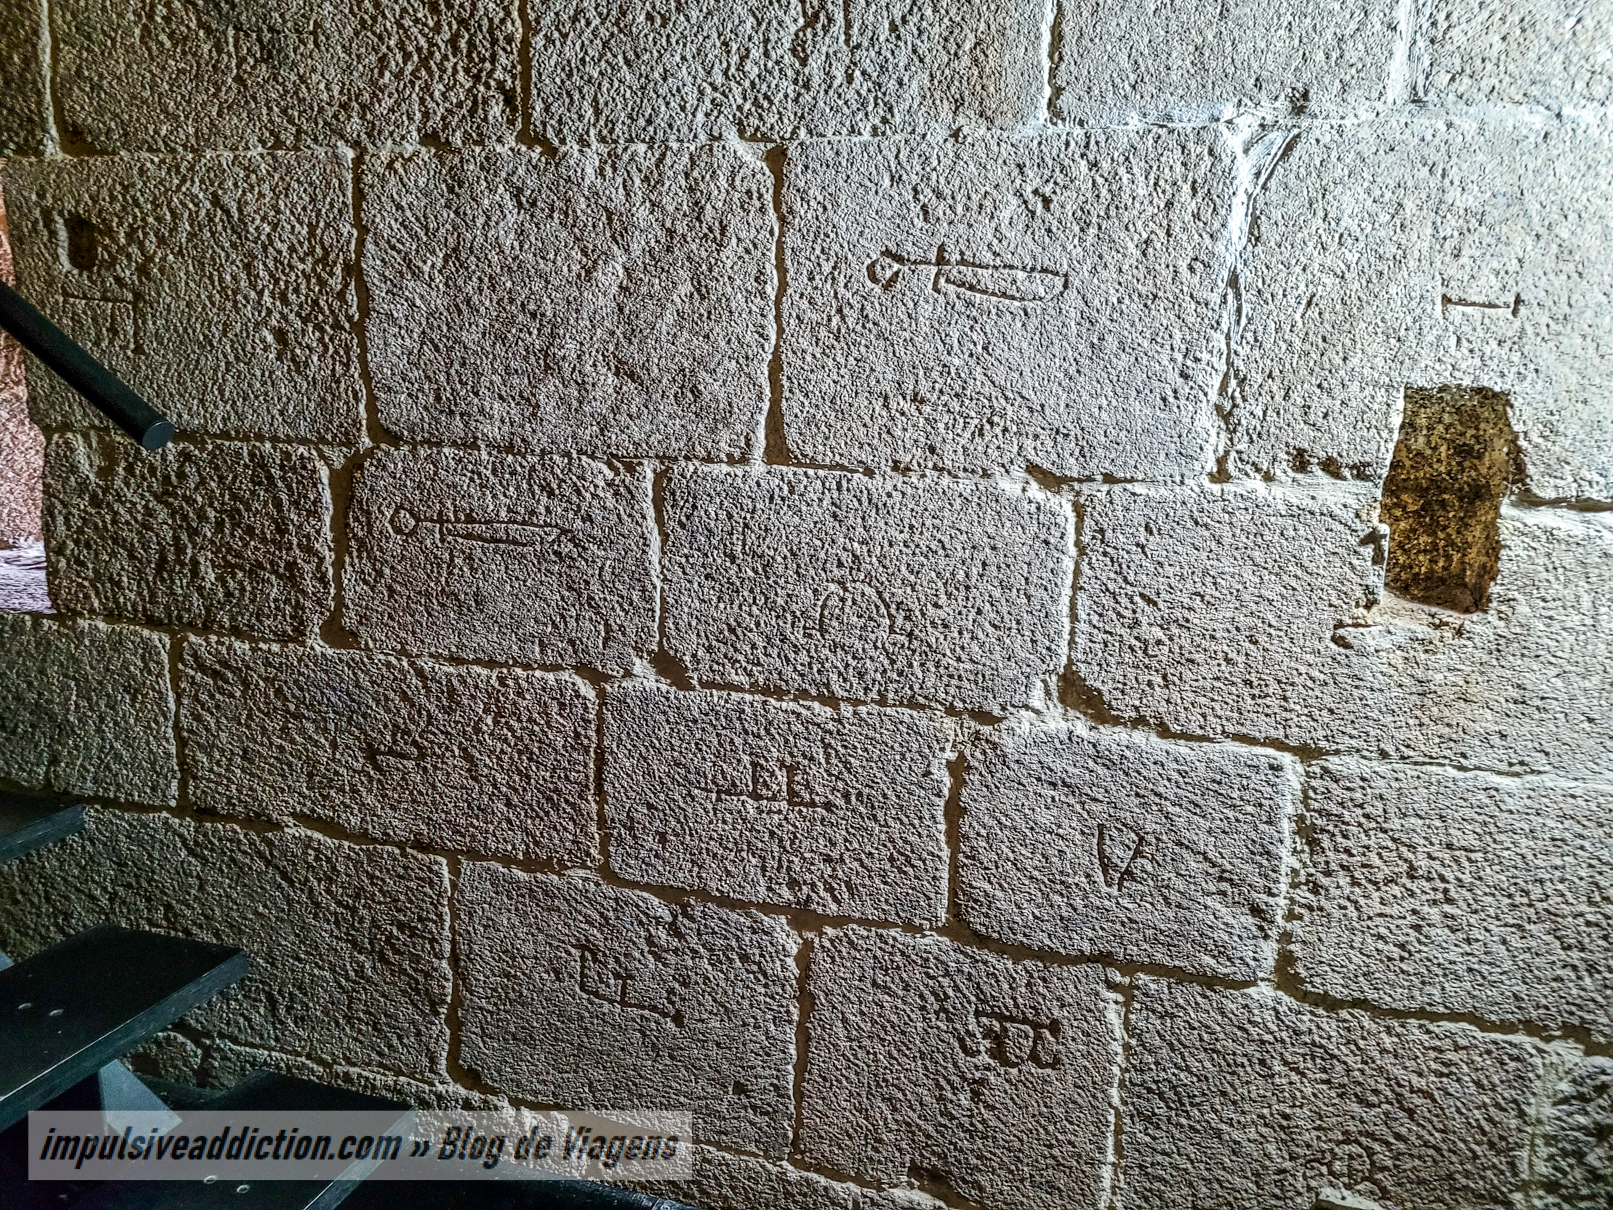 Siglas nas paredes do Castelo de Montalegre